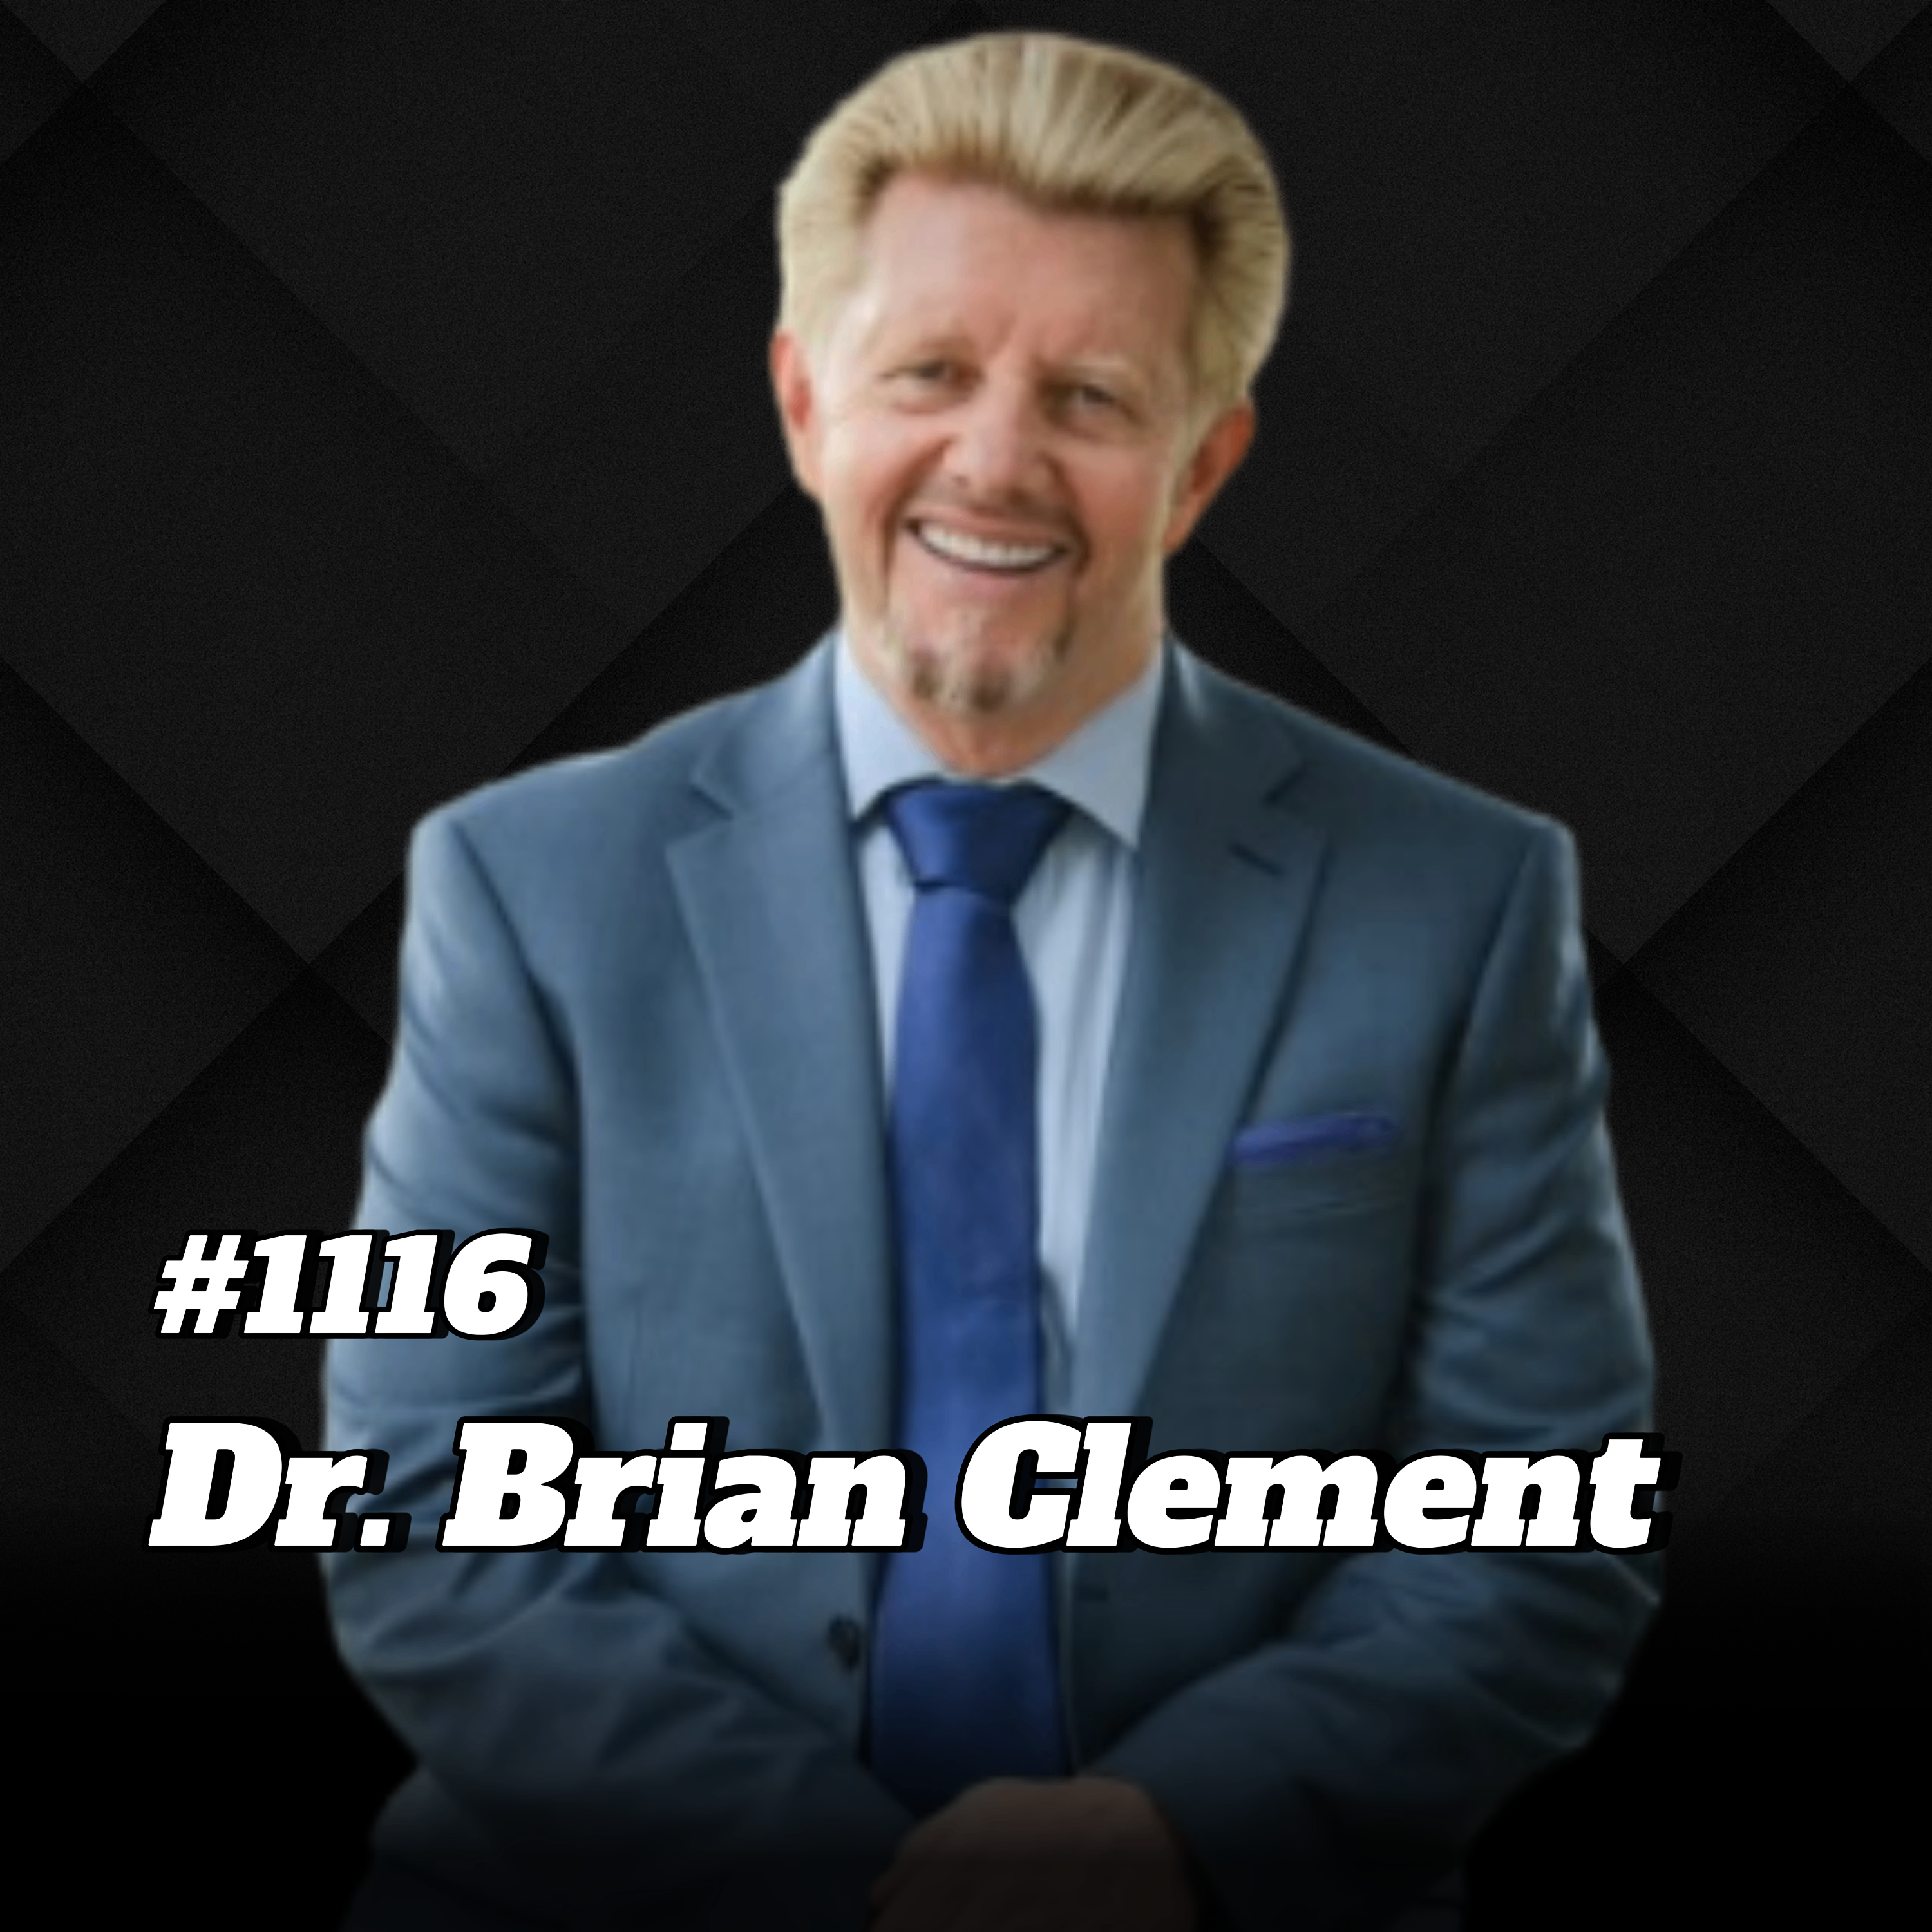 Fit und schlank in den Sommer: Diese Lebensmittel helfen beim Abnehmen I Dr. Brian Clement #1116